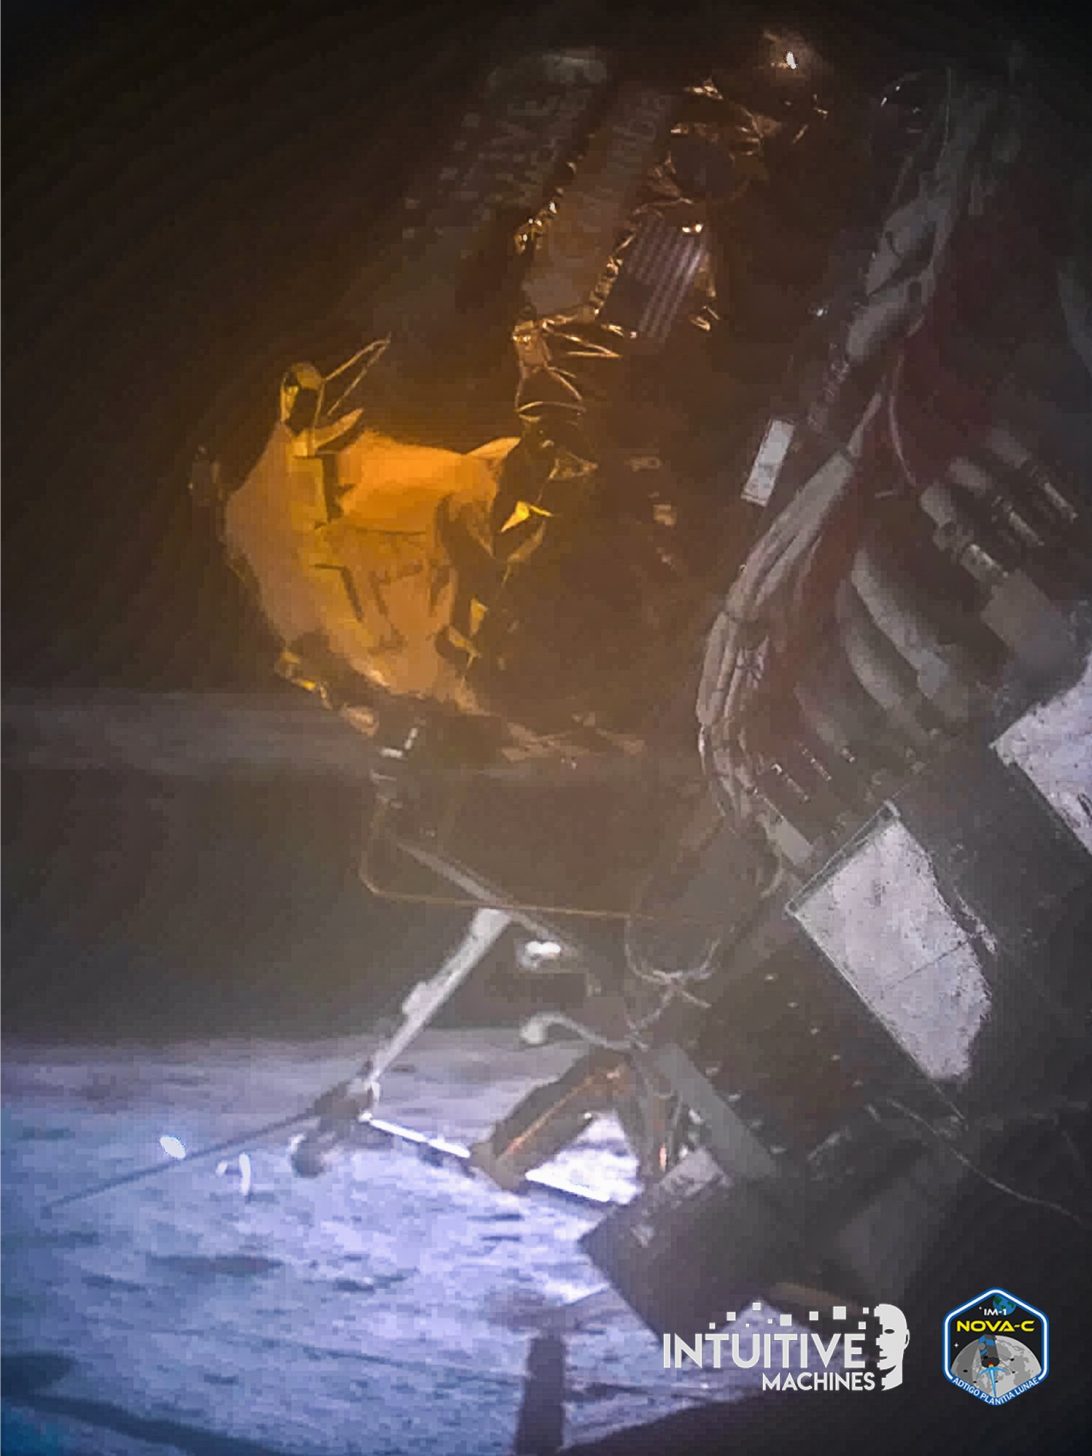 上周登月的“奥德修斯”着陆器因缺乏电能而停止通讯